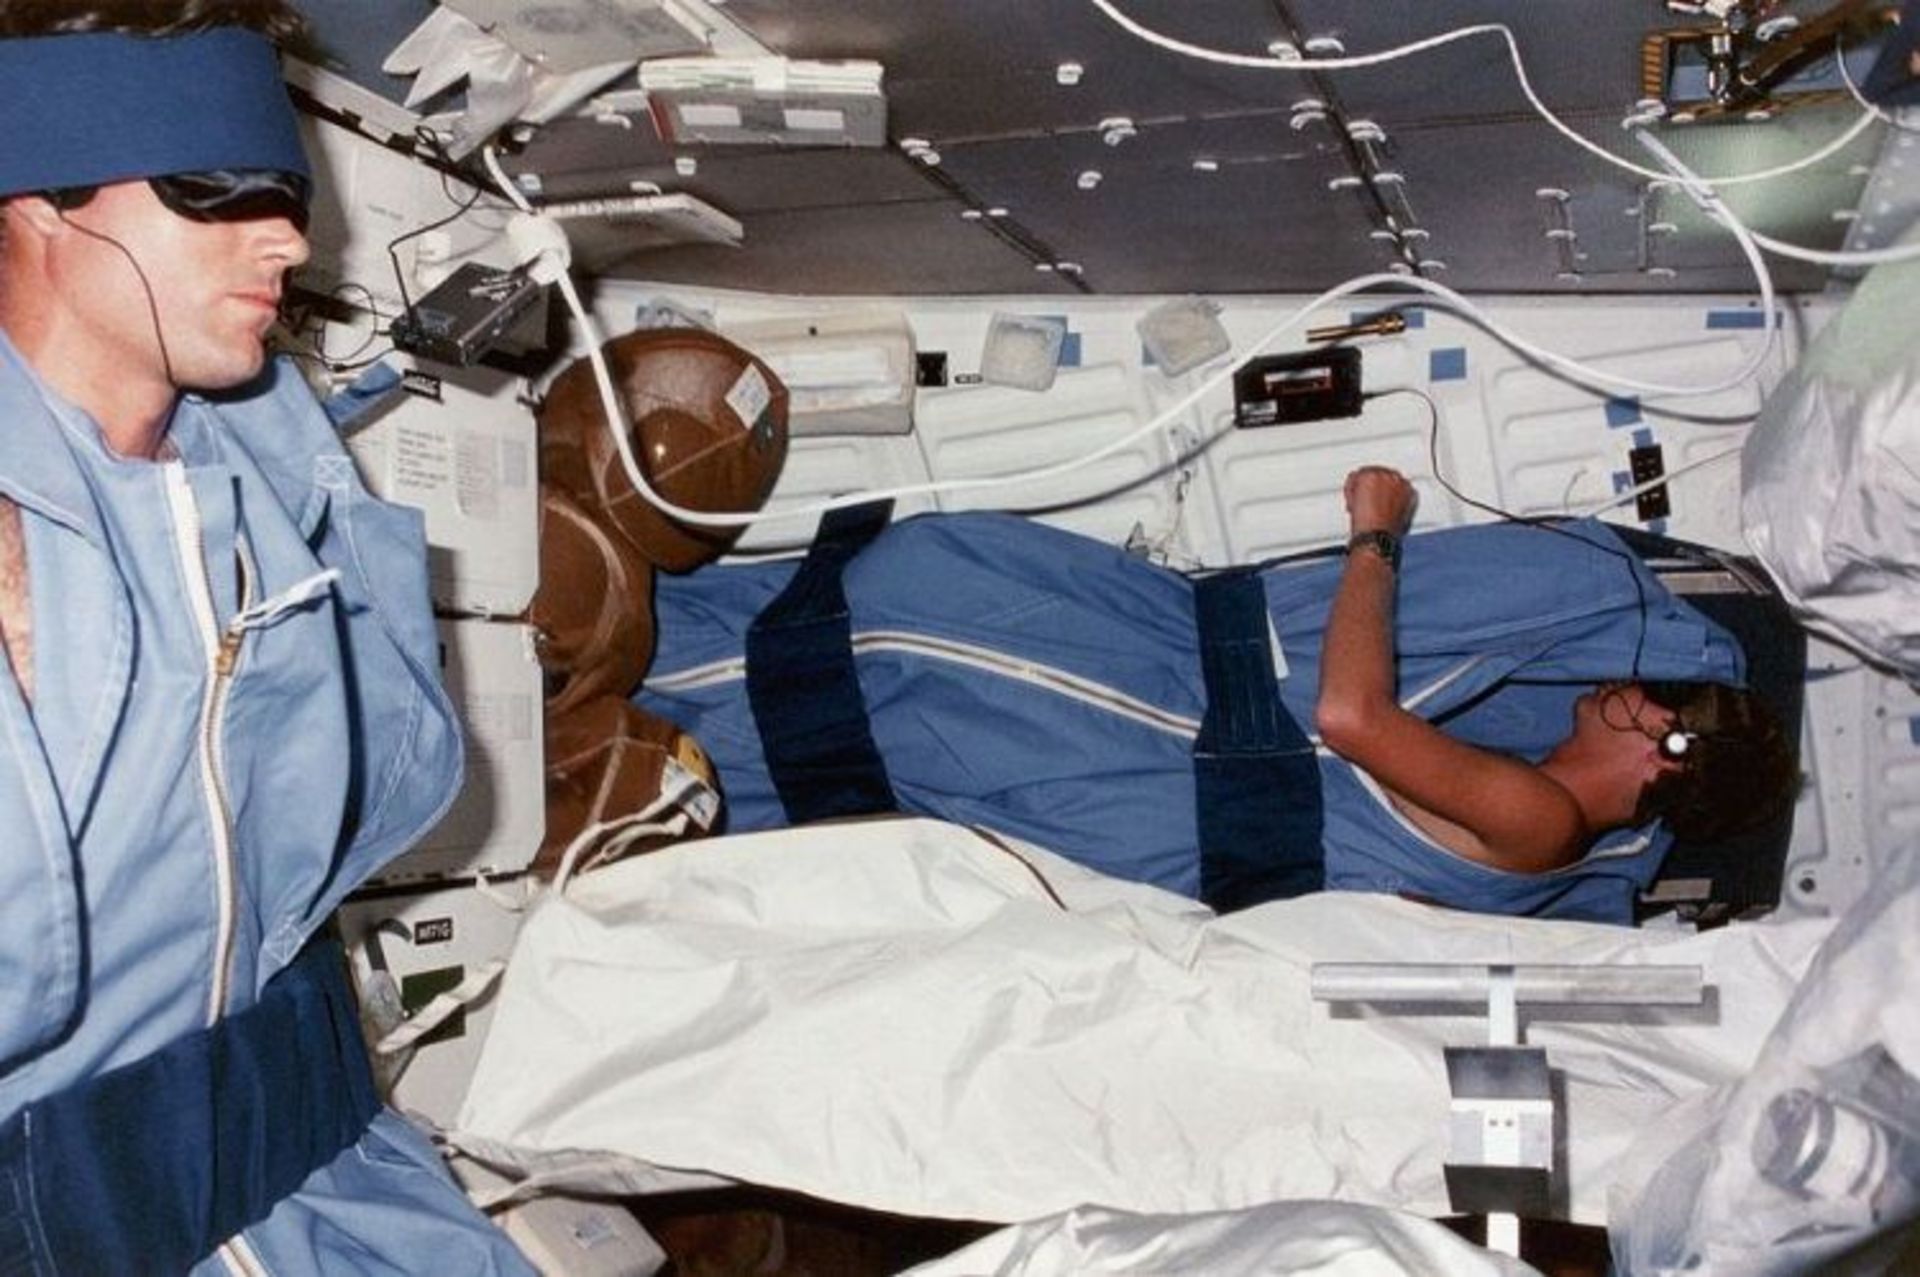 مرجع متخصصين ايران فضانوردان مايكل كتس و استيون هاولي در حال استفاده از واكمن براي خواب در سفينه فضايي ديسكاوري سال 1984